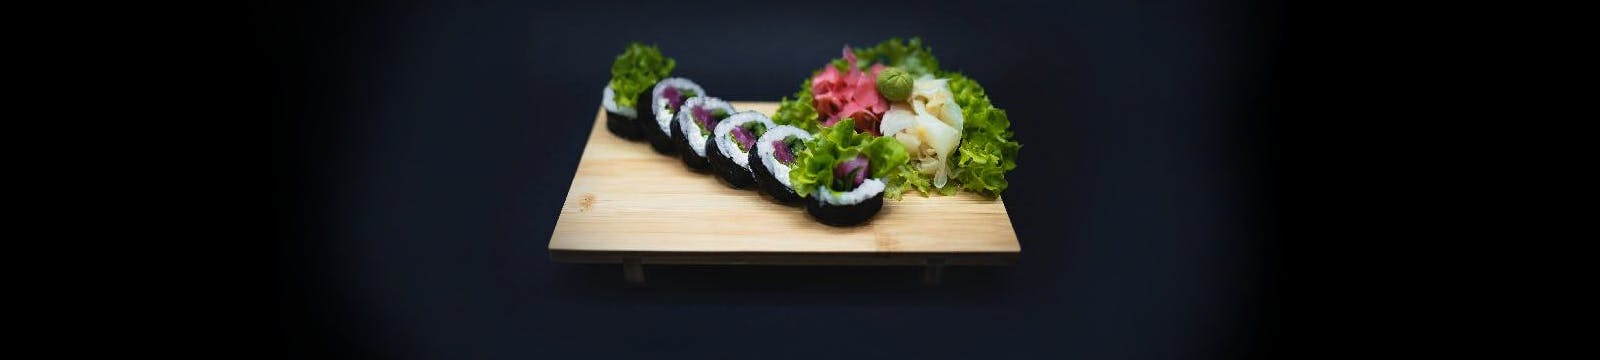 Masz ochotę na pyszne sushi? <br>Zamów już teraz!